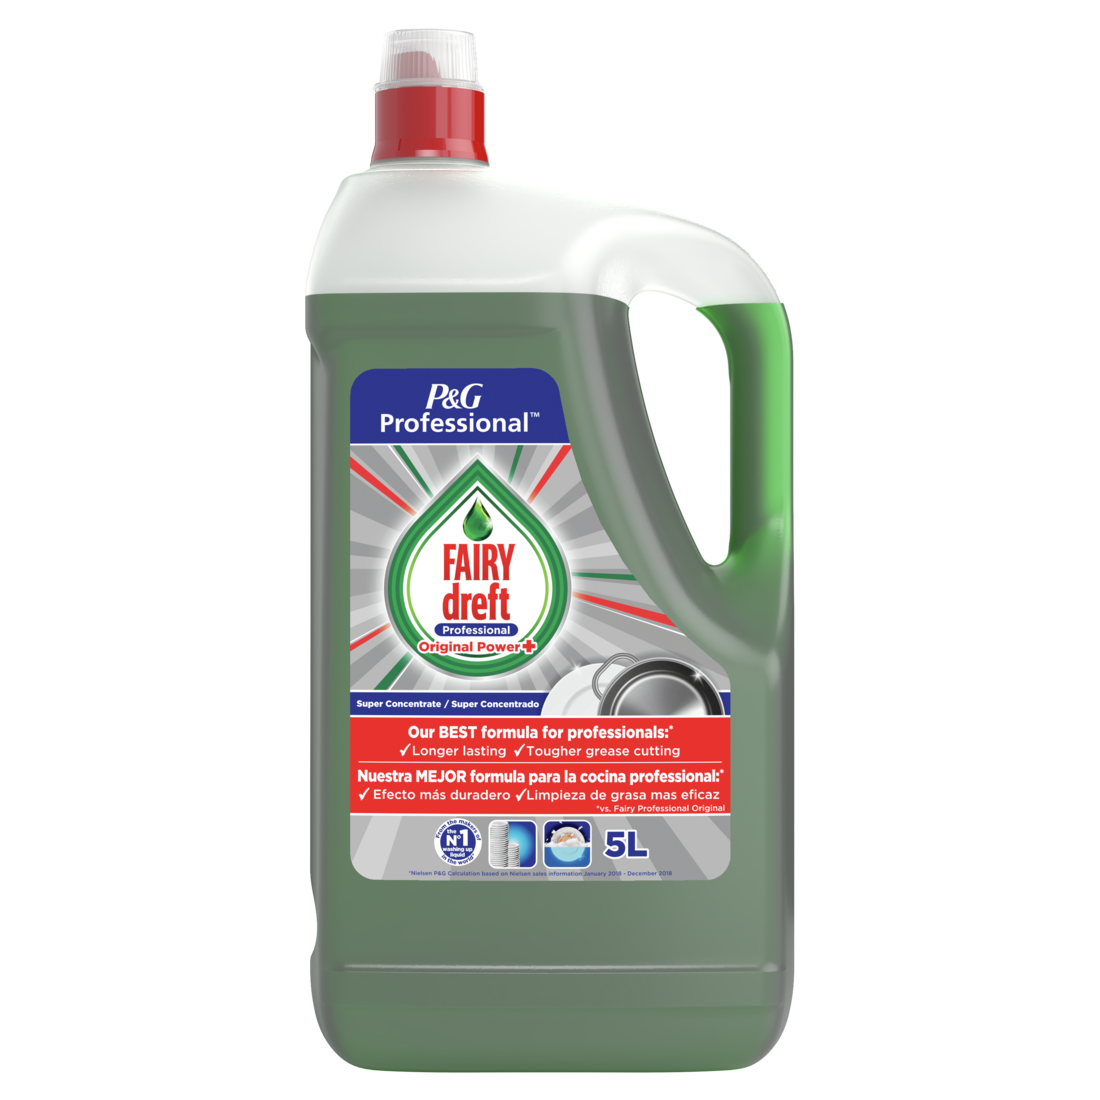 Lavavajillas mano concentrado extra higiene Fairy botella 500 ml -  Supermercados DIA